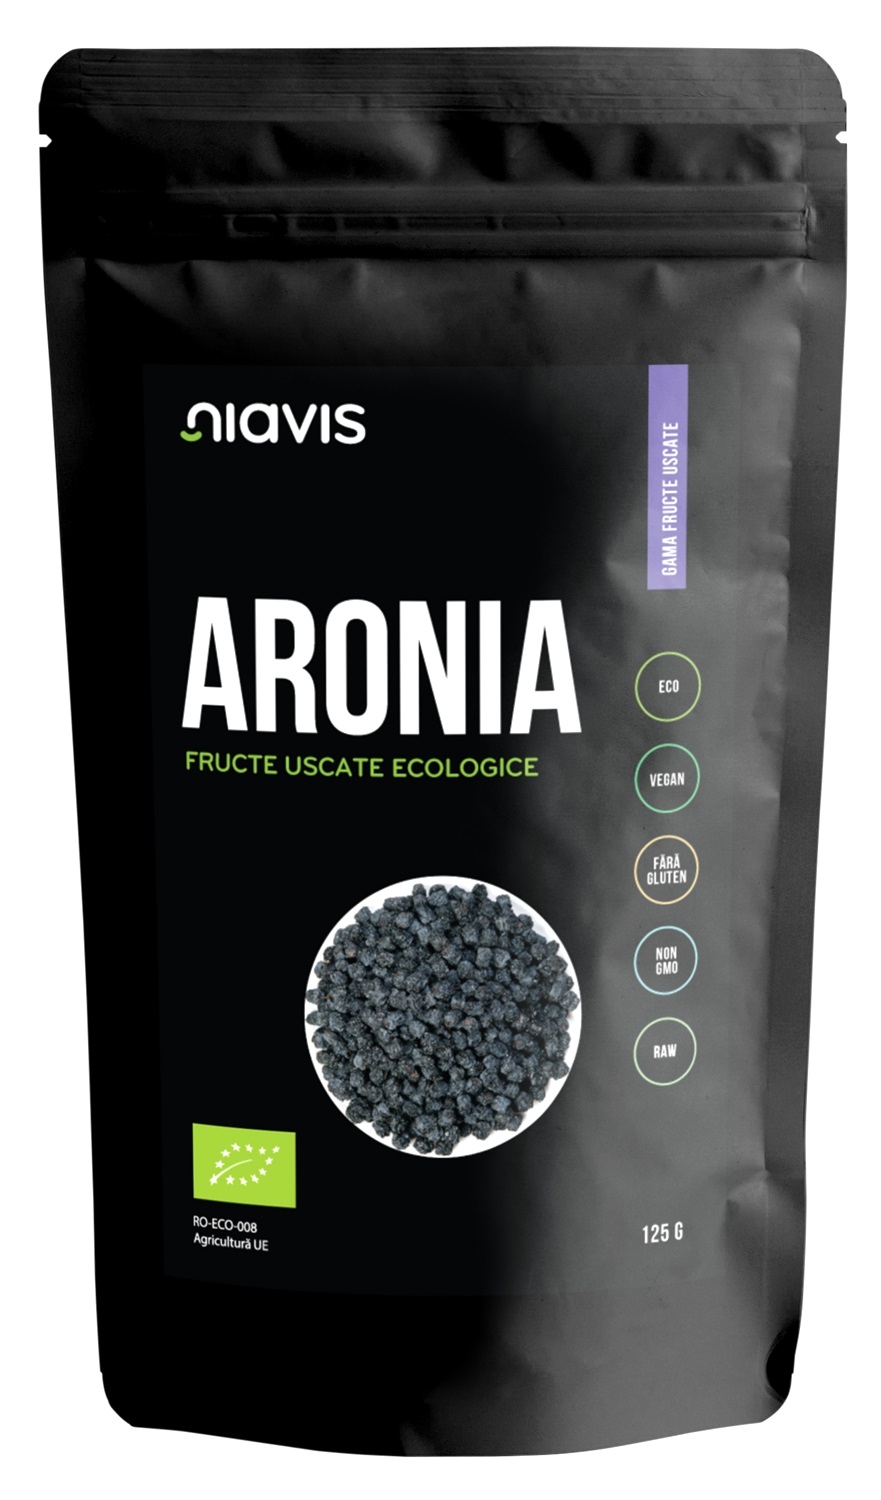 Aronia fructe uscate raw ECO/BIO 125g - Niavis